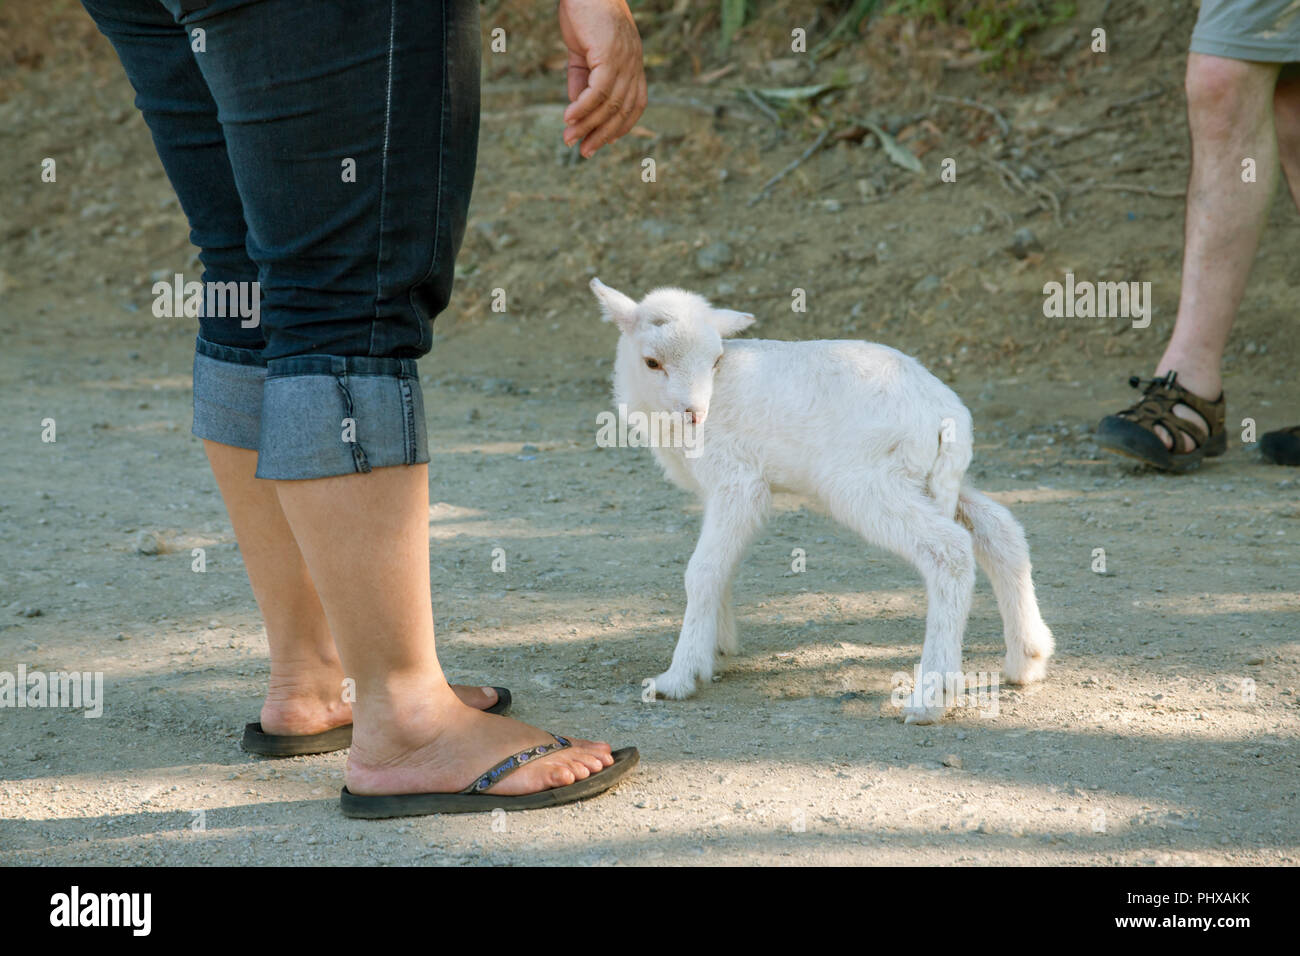 Parc National Palo Verde, Costa Rica, Amérique centrale. Homme et femme personne debout à côté d'un jeune agneau. Banque D'Images